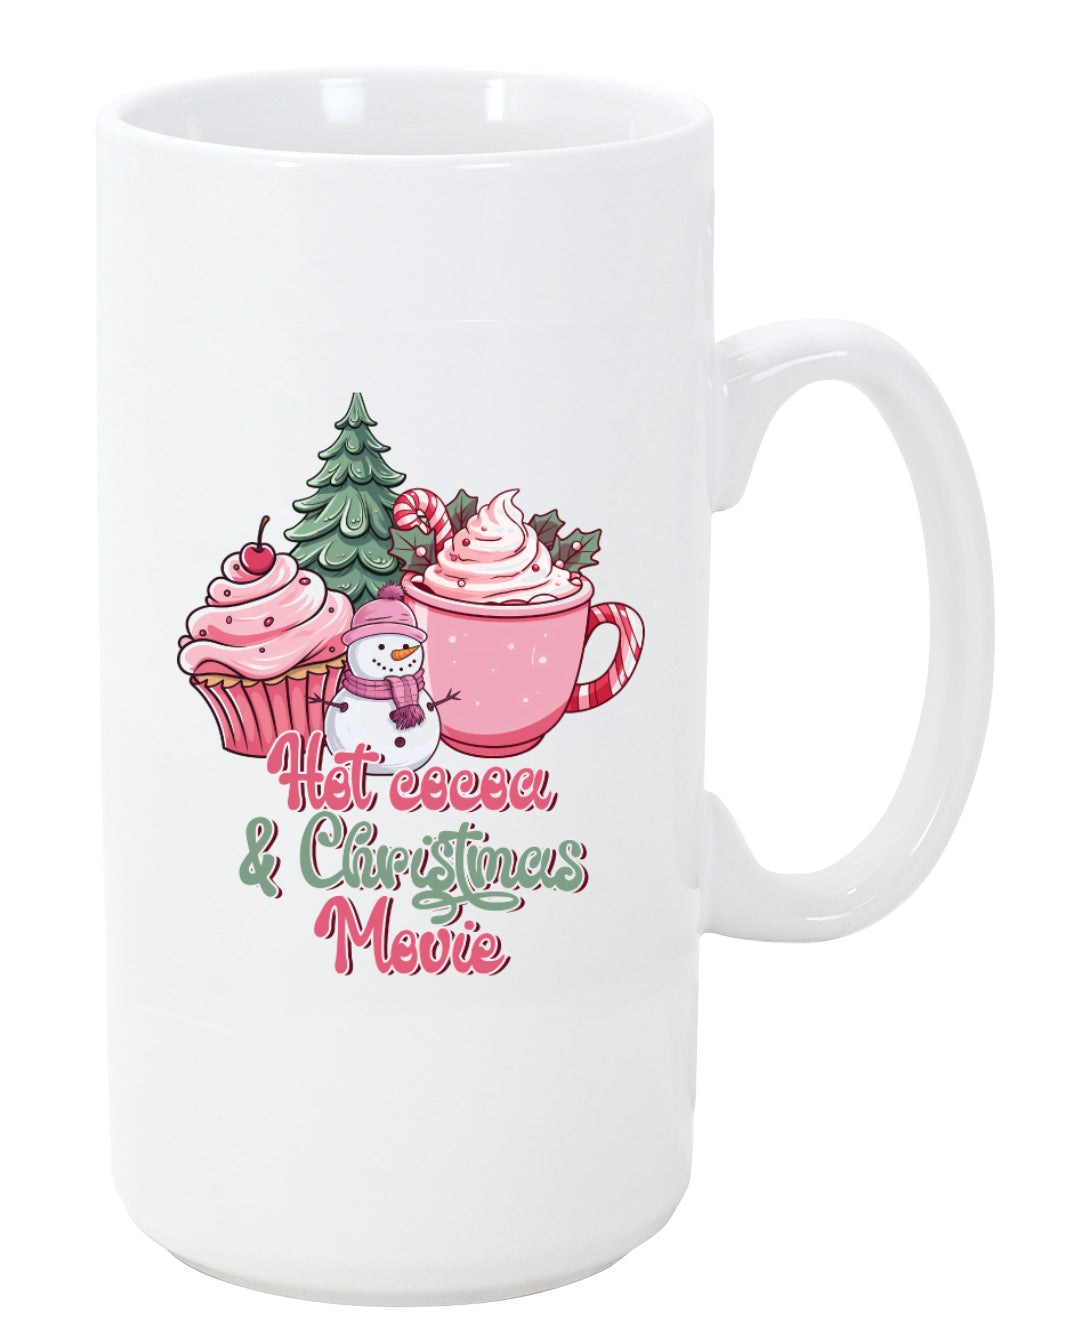 Christmas Movie Watching Coffee Mug with Pink Snowman, 11oz, 15oz, 20oz, Black Ringer Coffee Mug 11oz, Latte 12oz, v3 Ceramic Drinkware